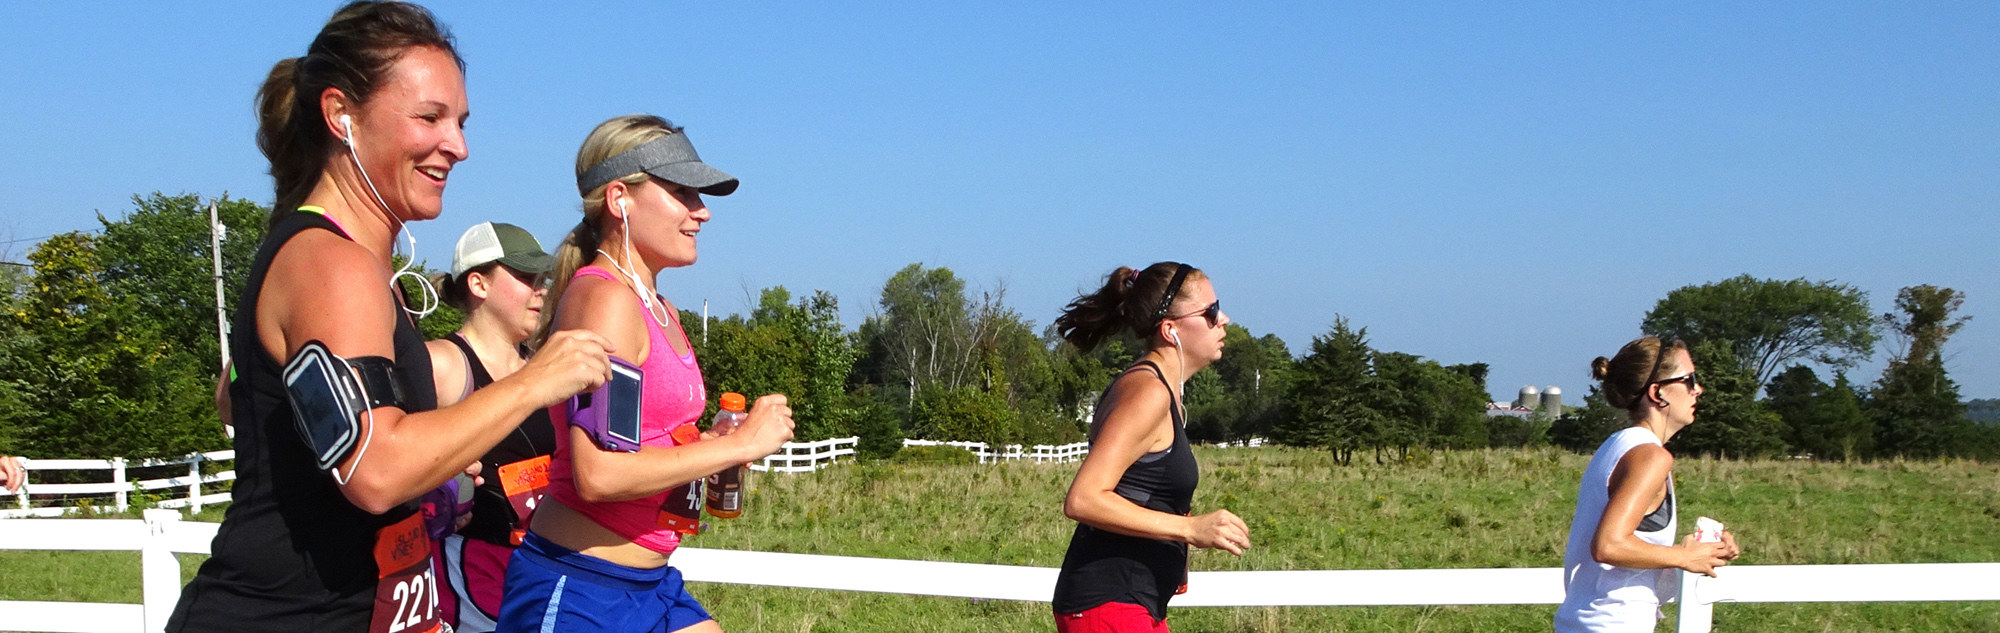 Women running along a field